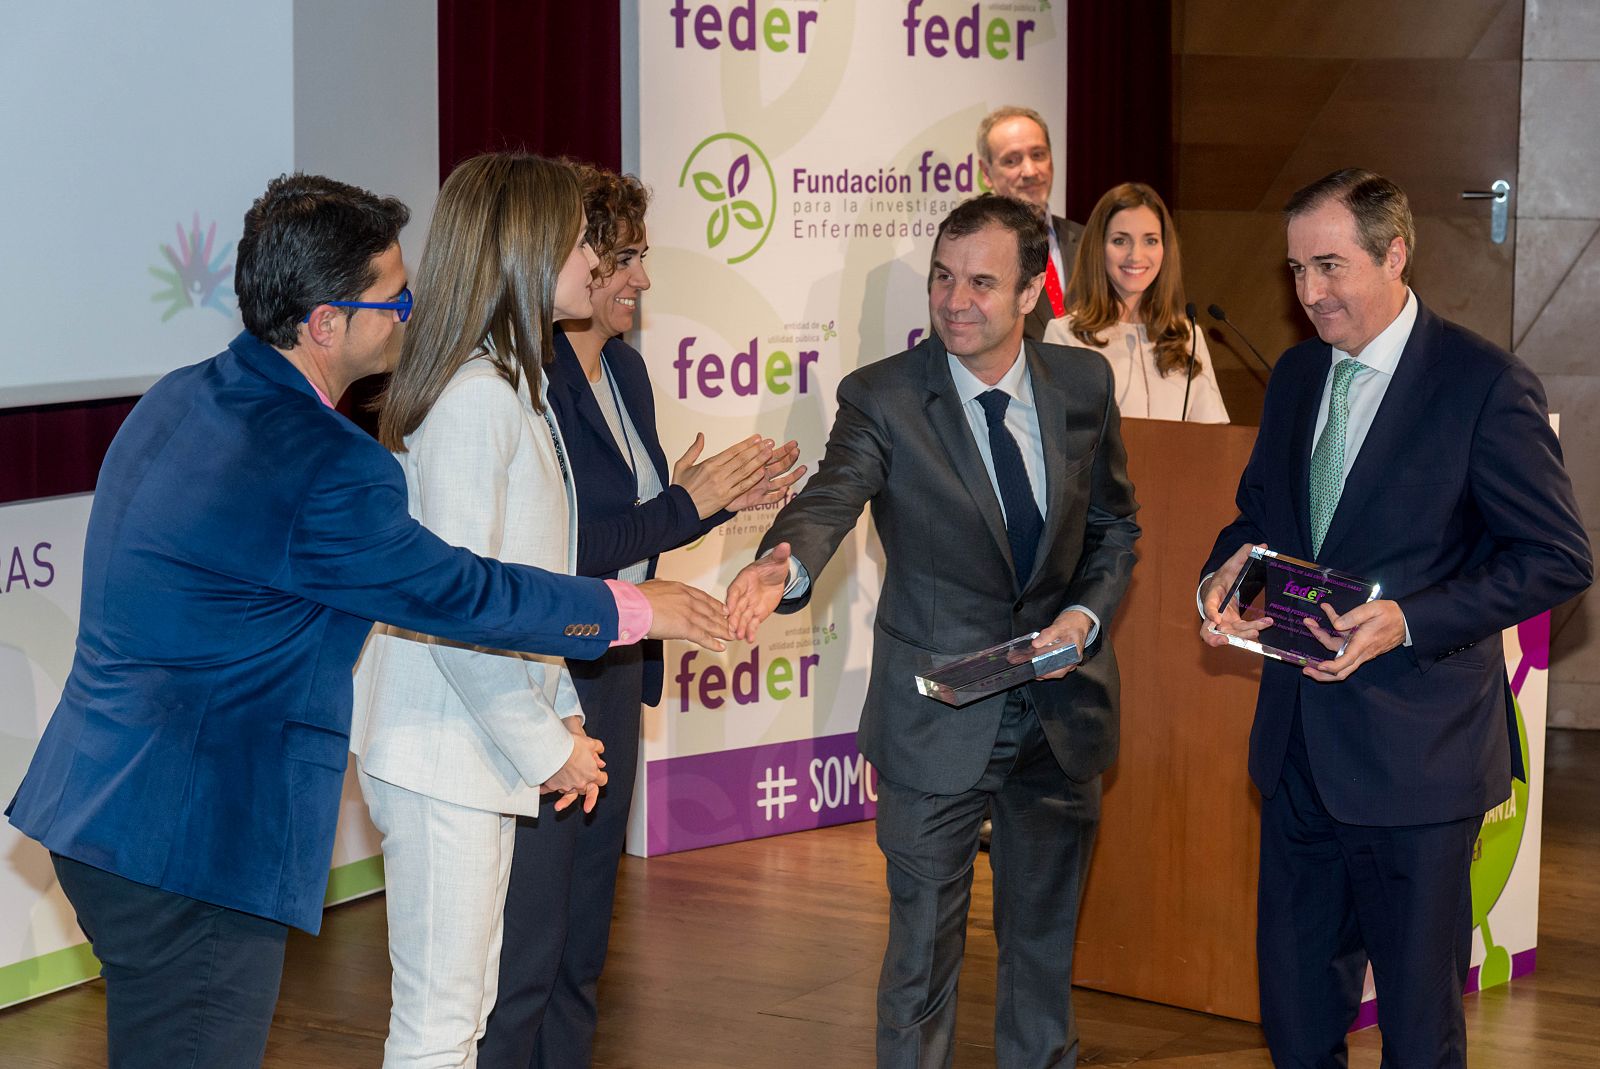 José Velasco y Eladio Jareño reciben el Premio FEDER de manos de la Reina Letizia